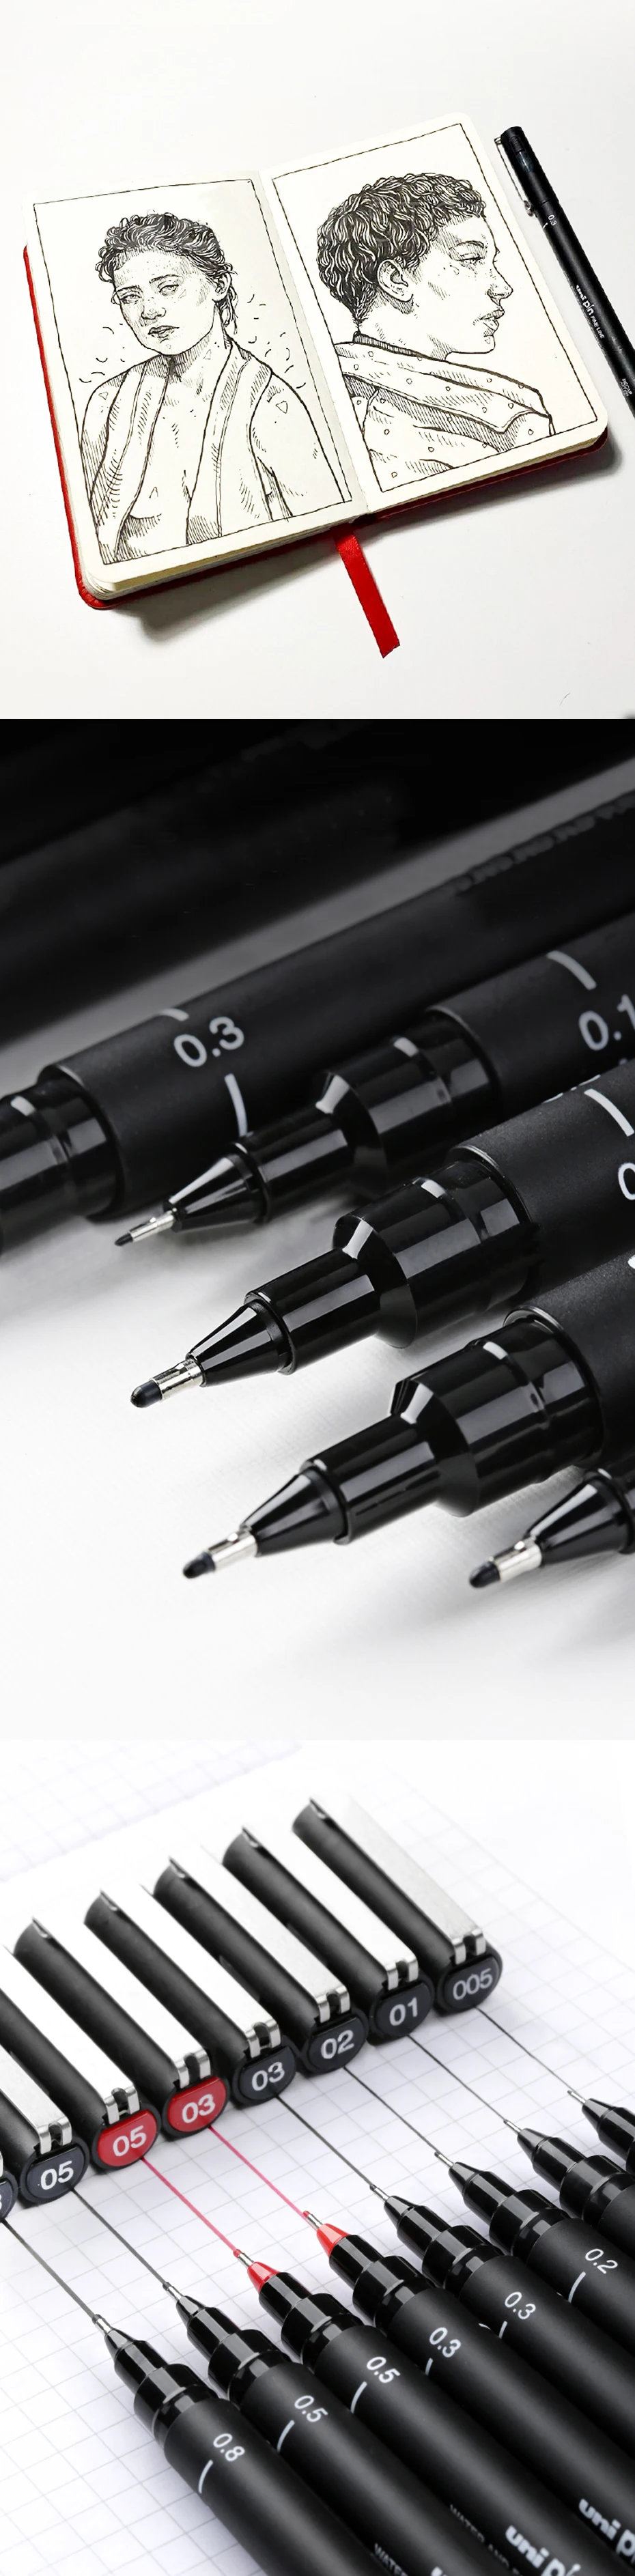 UNI чертежная ручка игла искусство рисования для учащихся ручка-закладка PIN-200 водостойкая картина ход линия рисования дизайн черная ручка